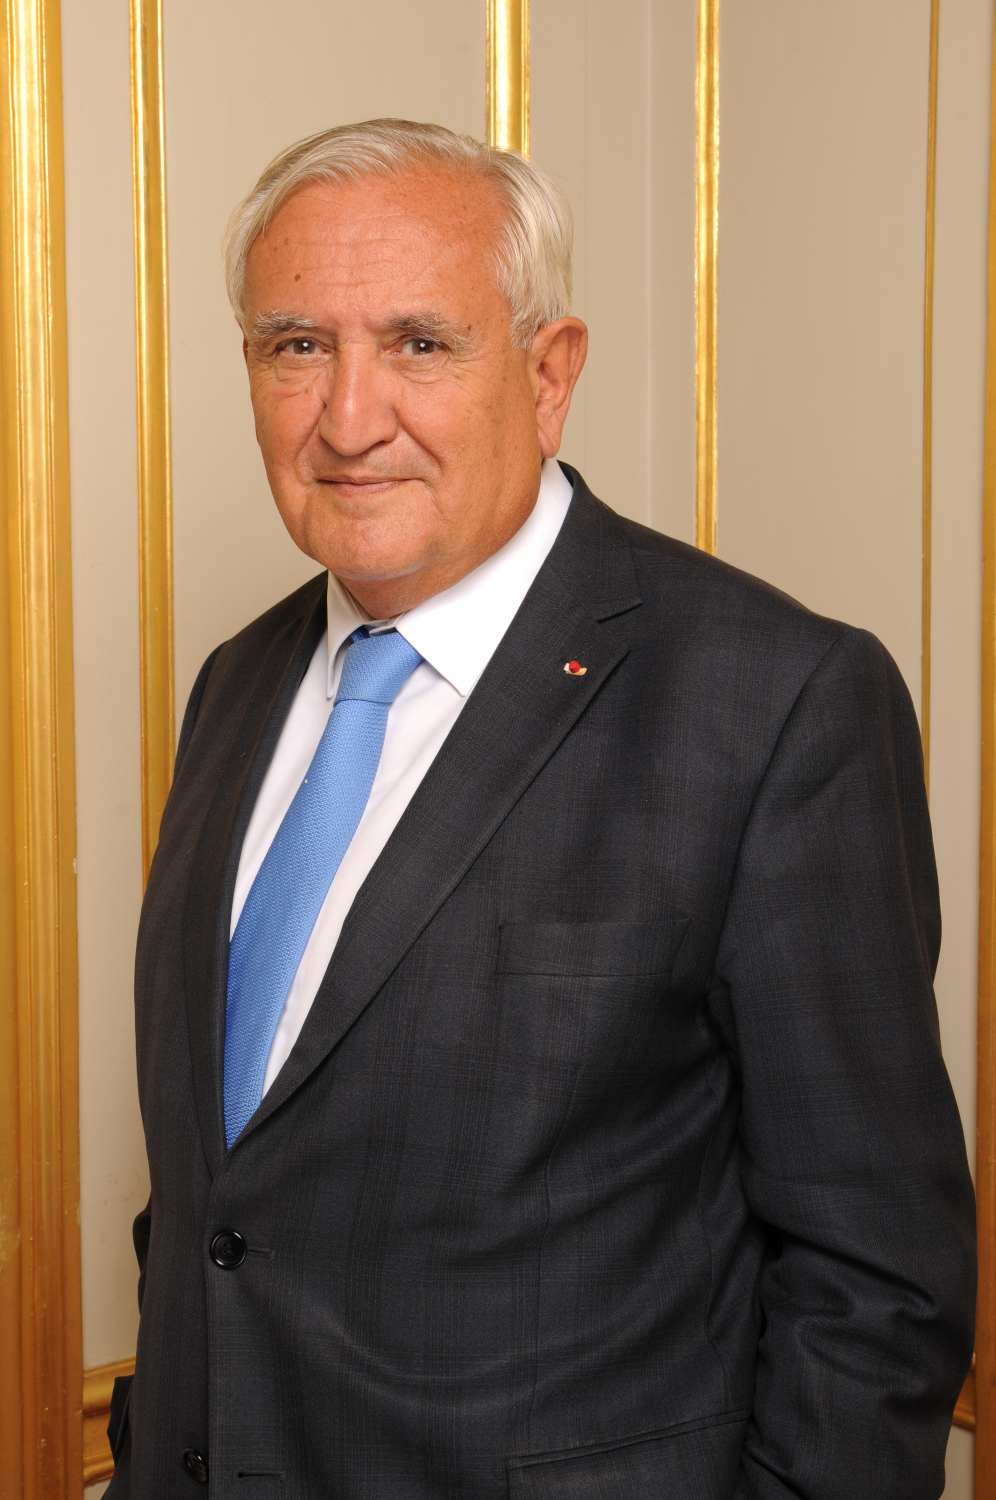 Jean-Pierre Raffarin (72)